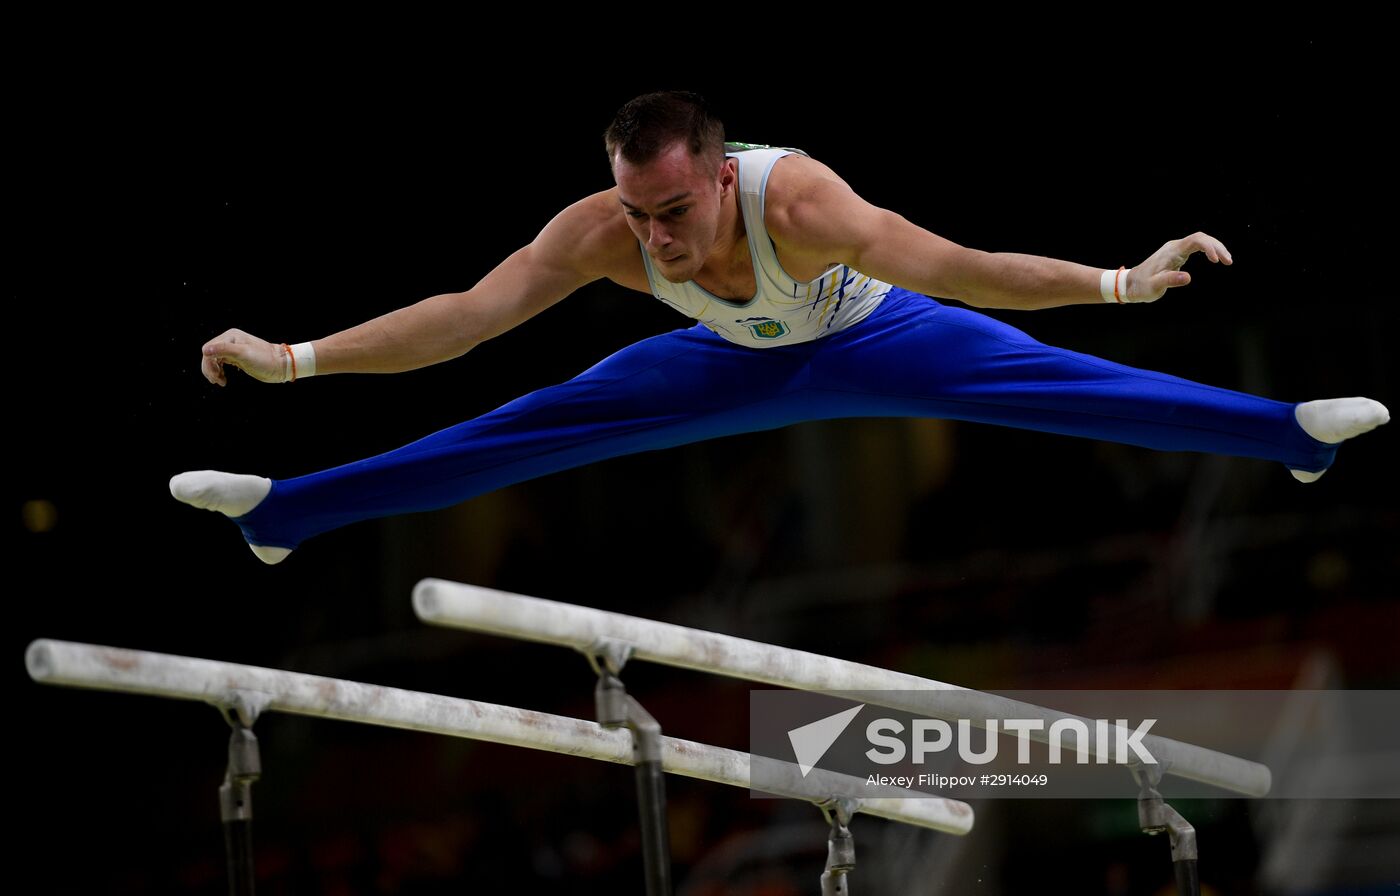 2016 Olympics. Artistics gymnastics. Men's parallel bars